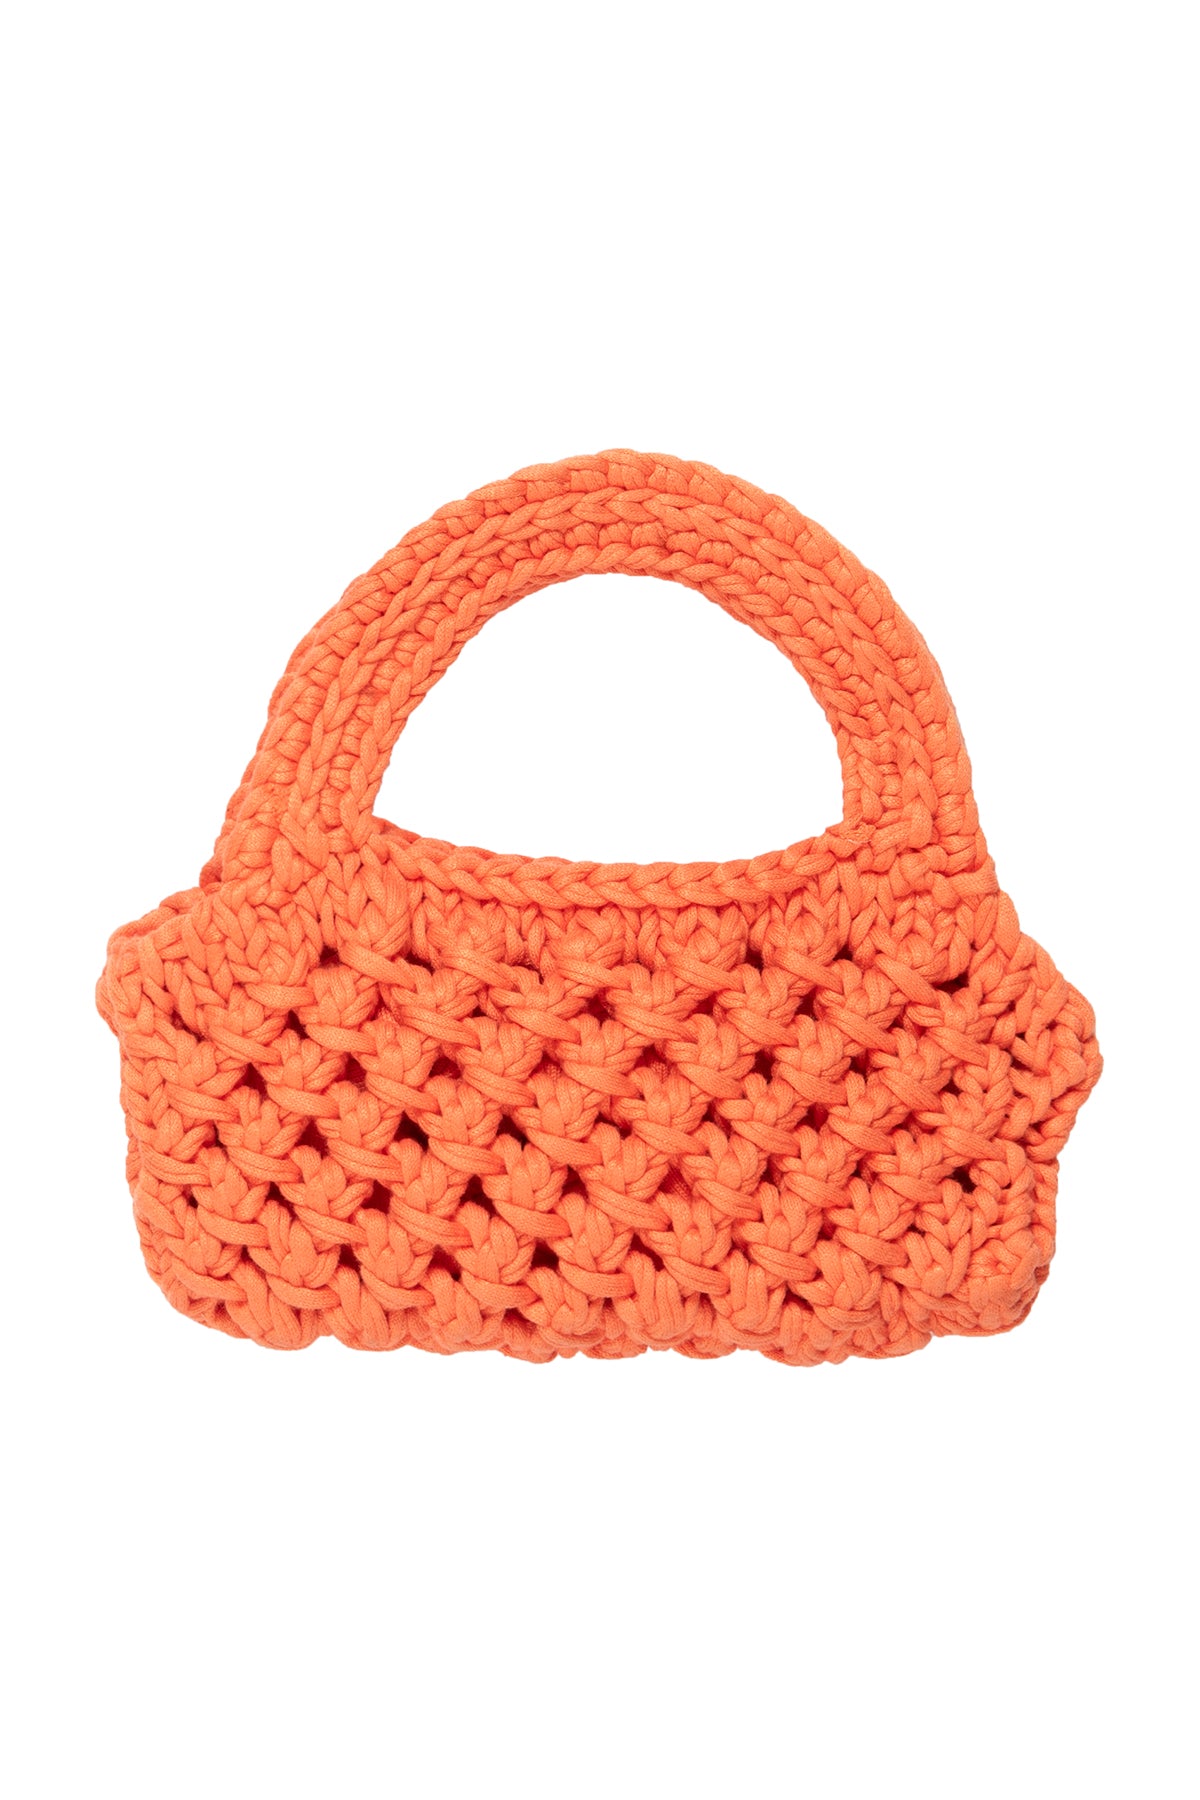 Bennie Crochet Bag in Tangerine Orange-24665045827777